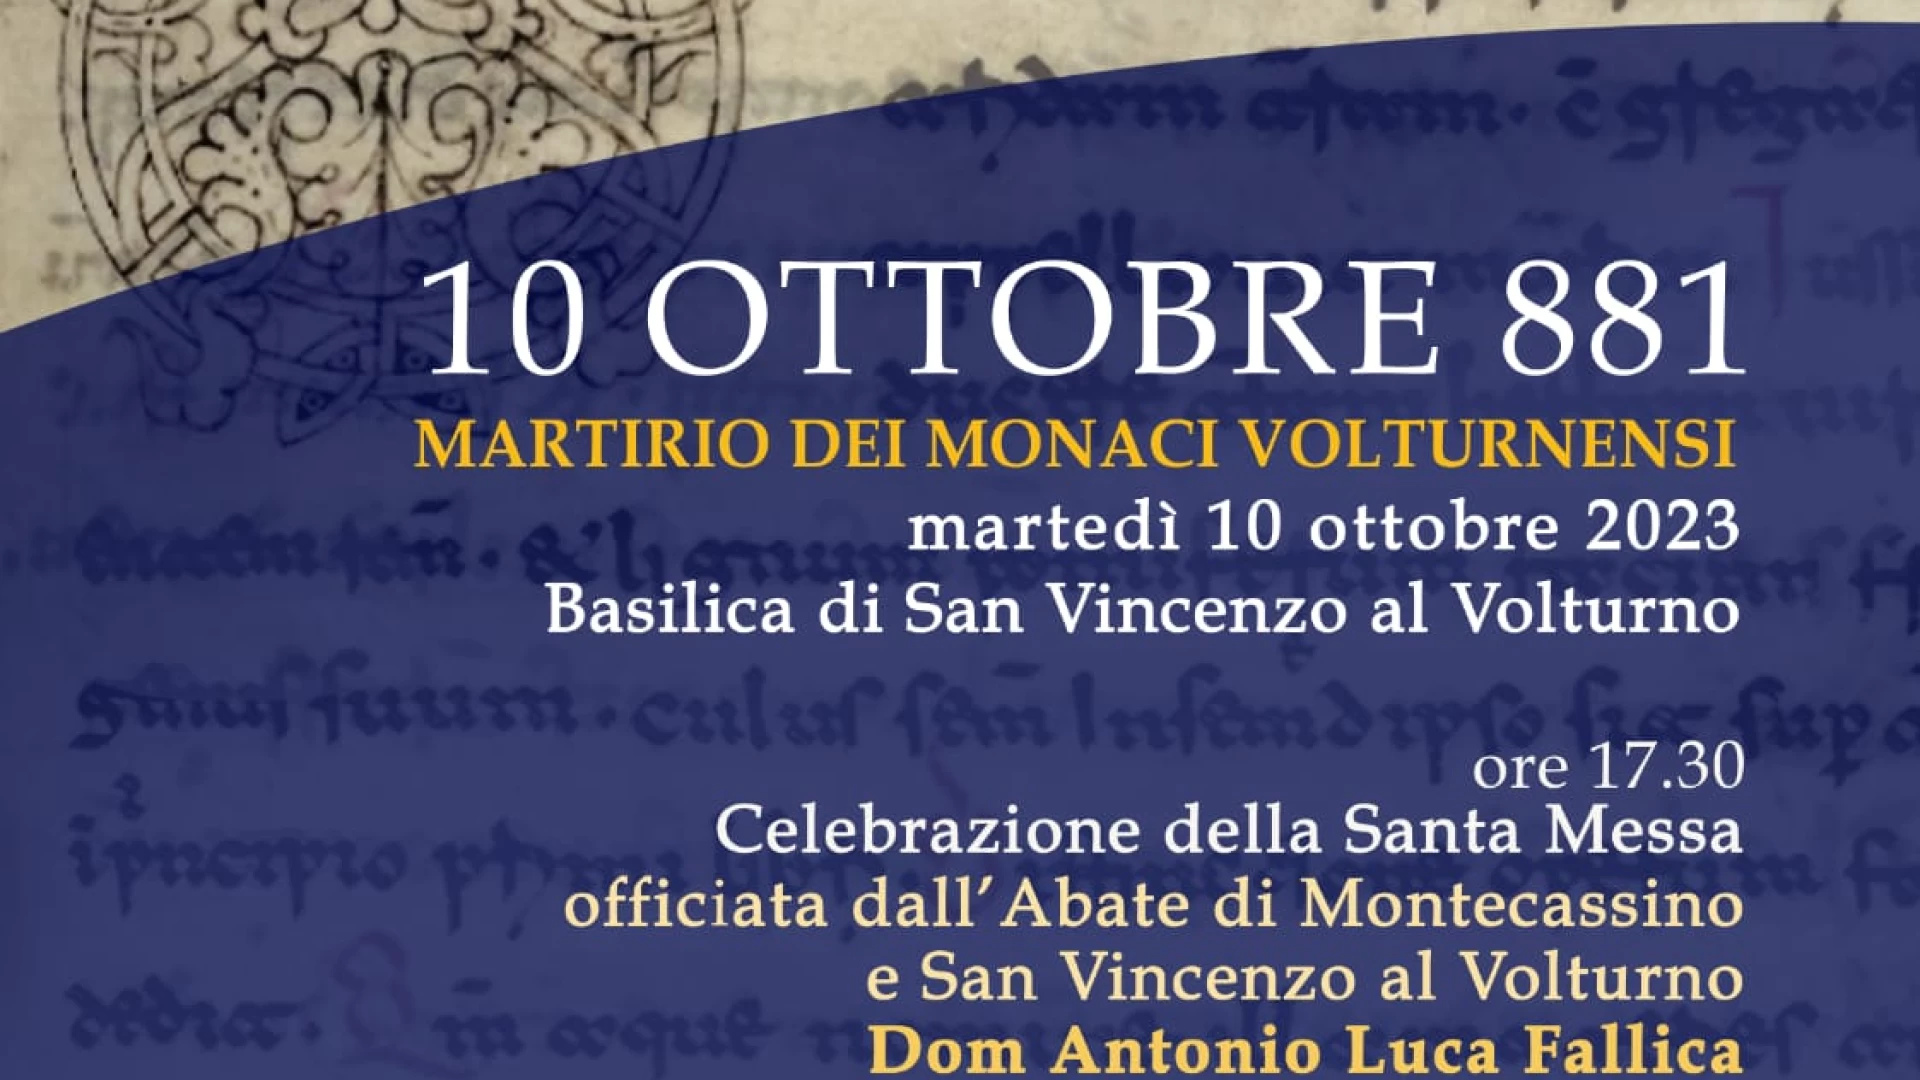 Martirio dei Monaci Volturnensi, all'Abbazia di San Vincenzo il ricordo del 10 ottobre 881